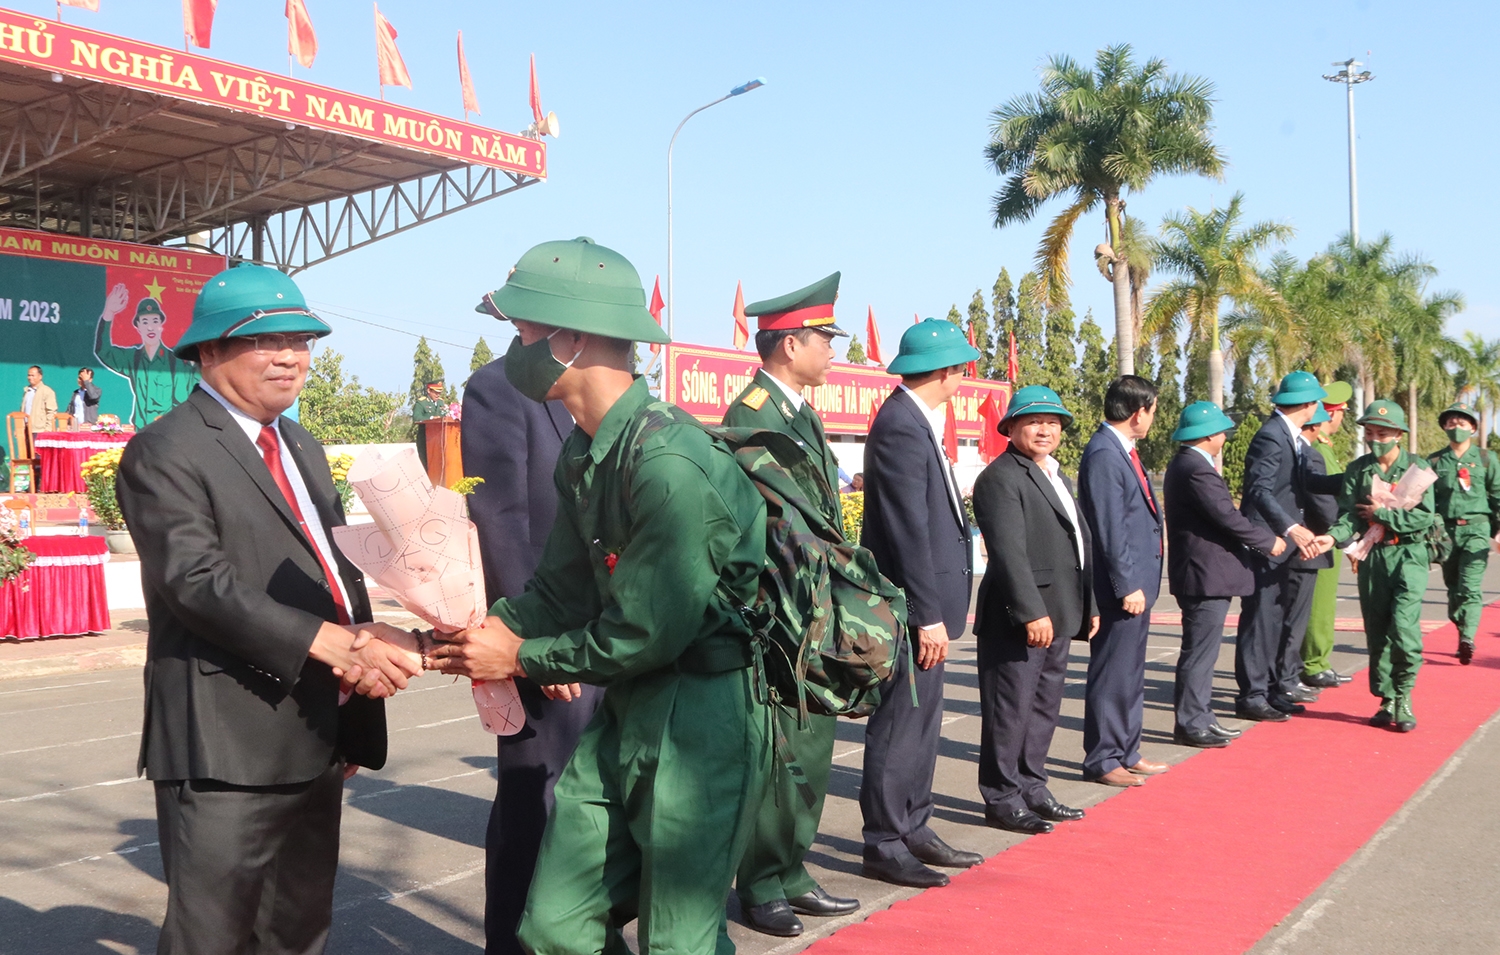 Ông Lê Ngọc Tuấn Chủ tịch UBND tỉnh Kon Tum động viên các tân binh lên đường nhập ngũ